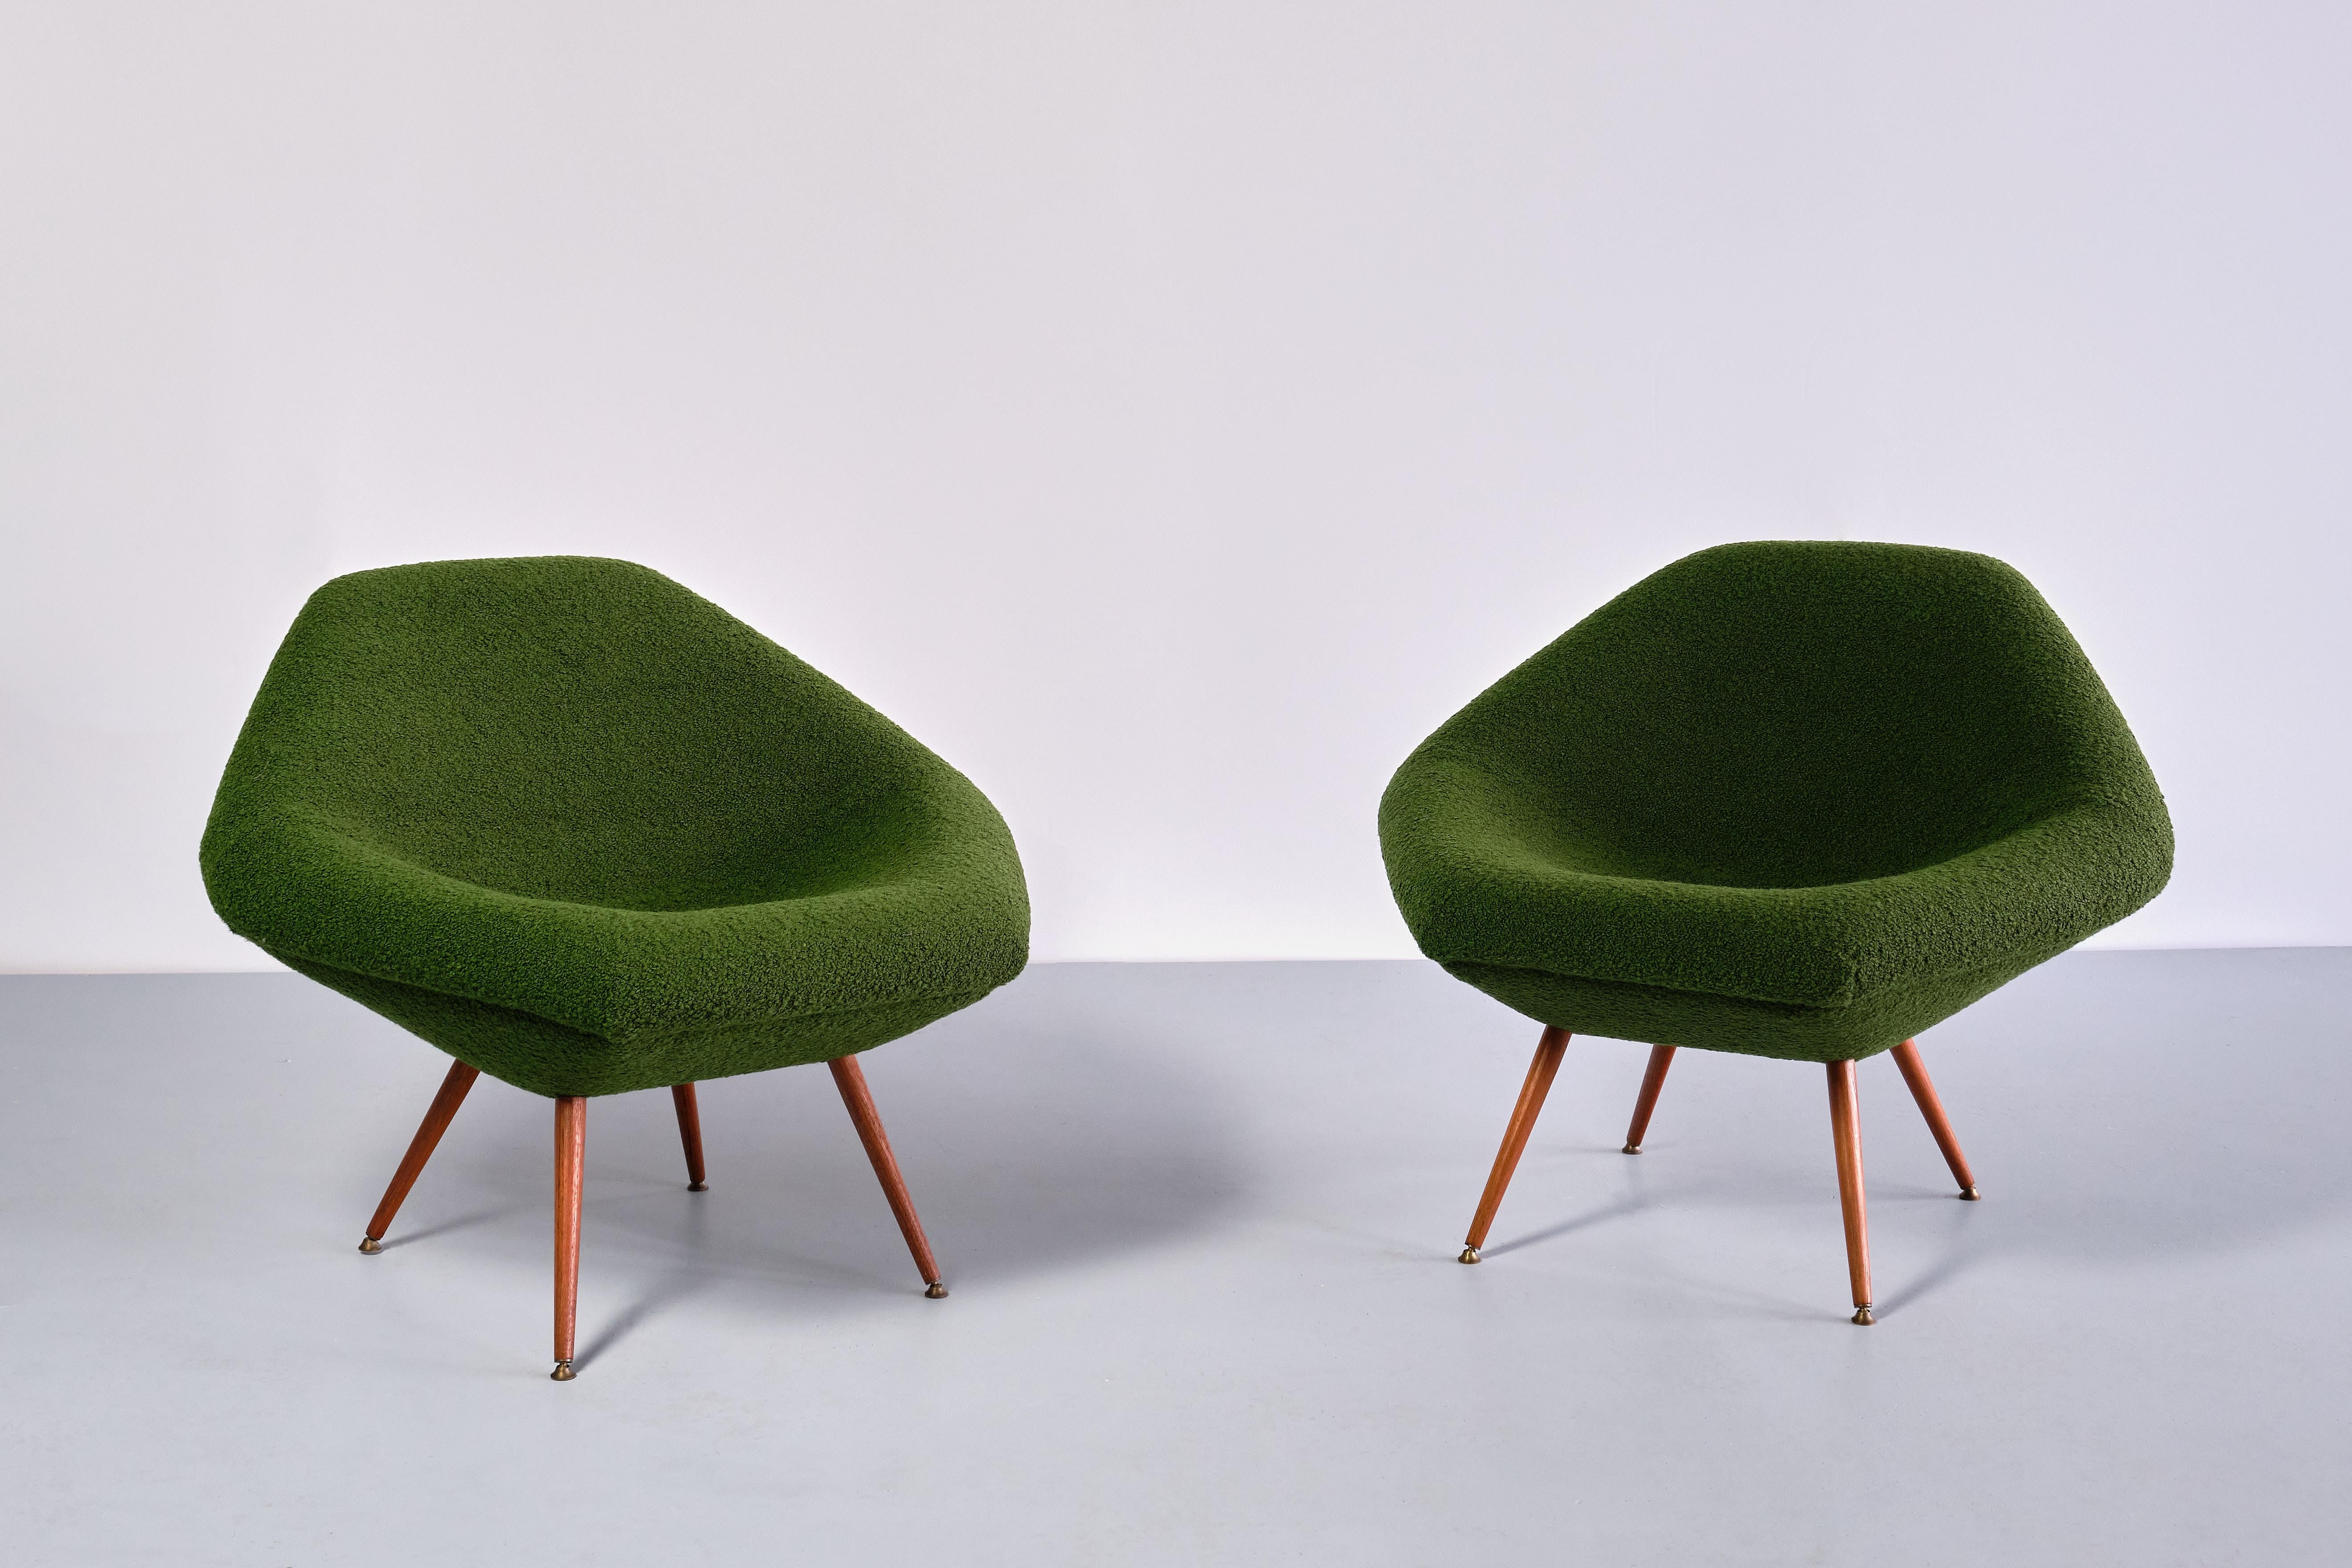 Cette rare paire de chaises longues a été conçue par Arne Dahlén au début des années 1960. Le modèle, appelé 